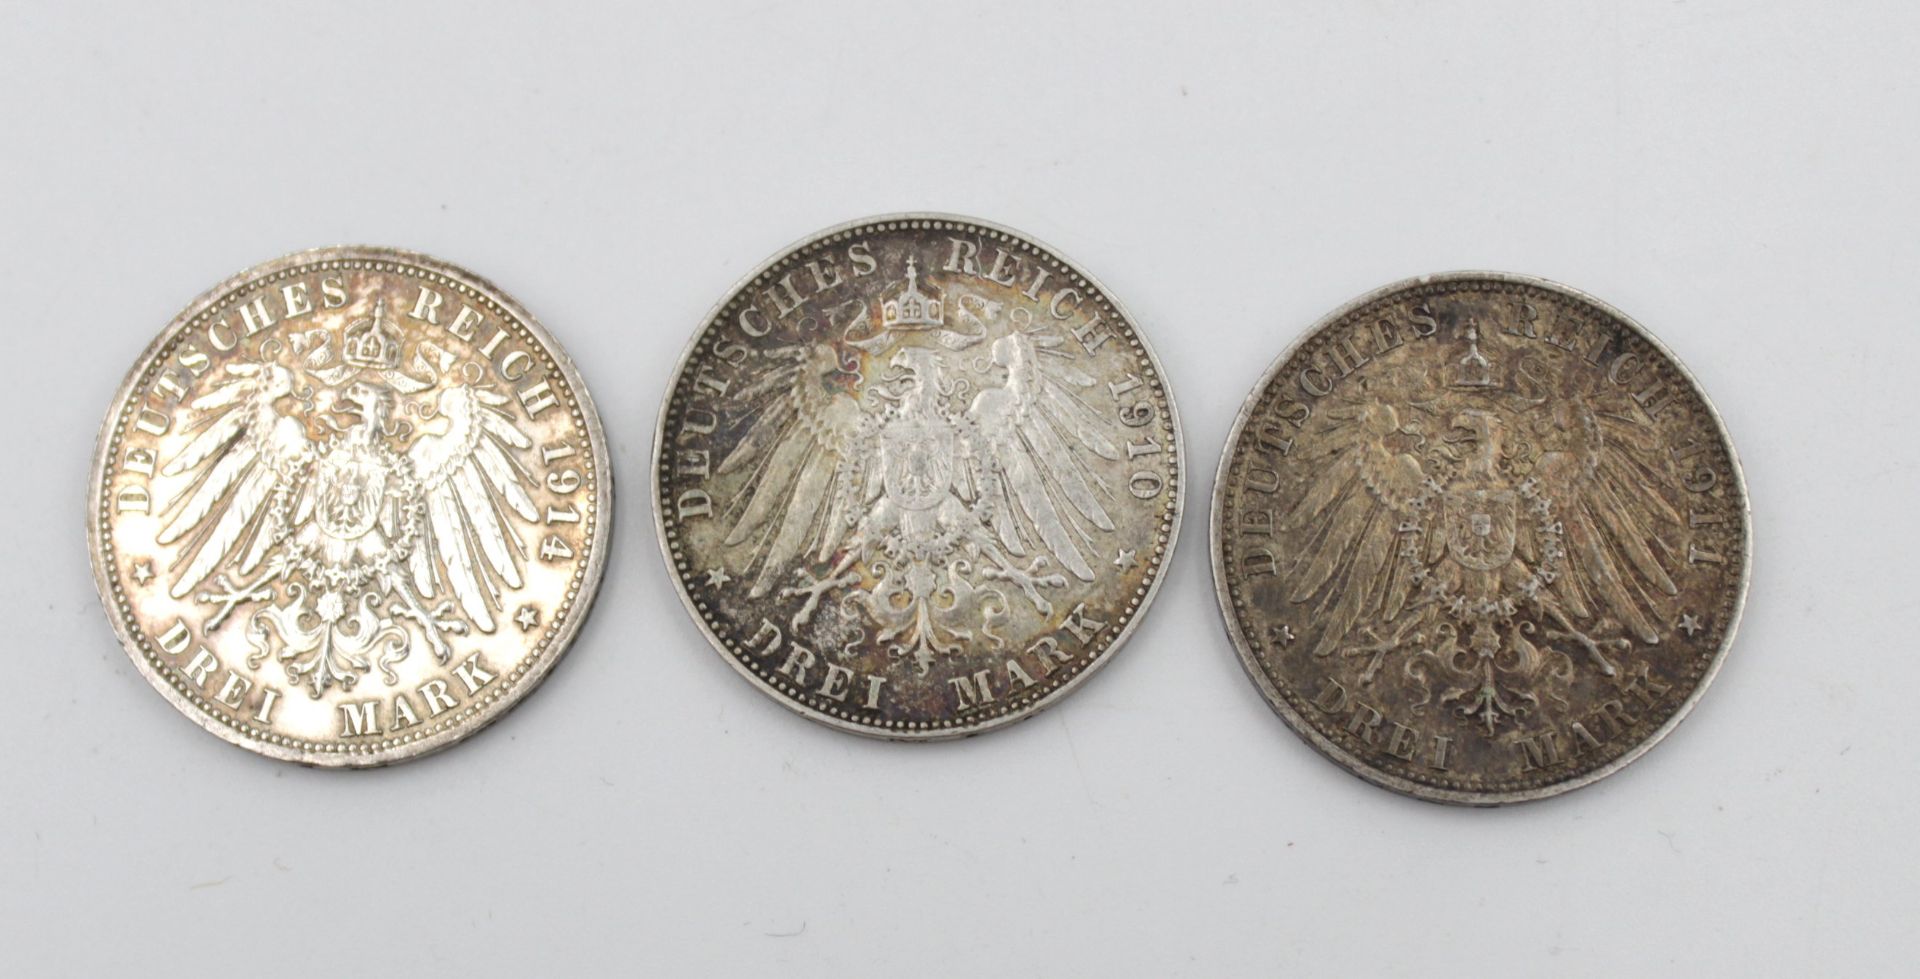 3x Drei Mark, Deutsches Reich, 1910, 1911 und 1914, zus. 49,8gr., D-3cm. - Bild 2 aus 2